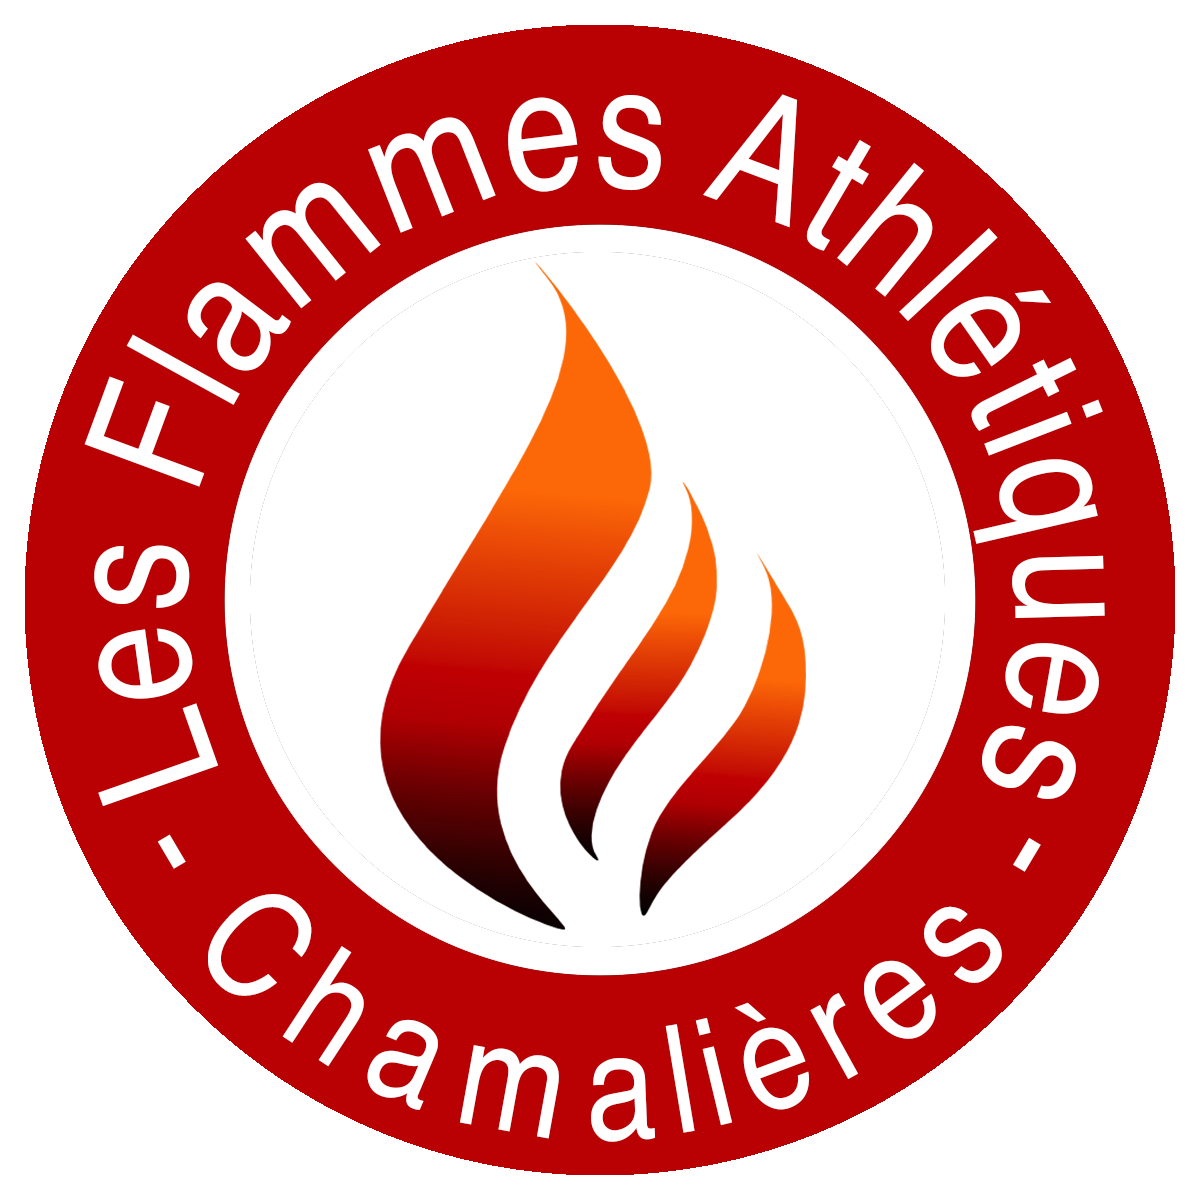 Les Flammes Athlétiques Chamalières